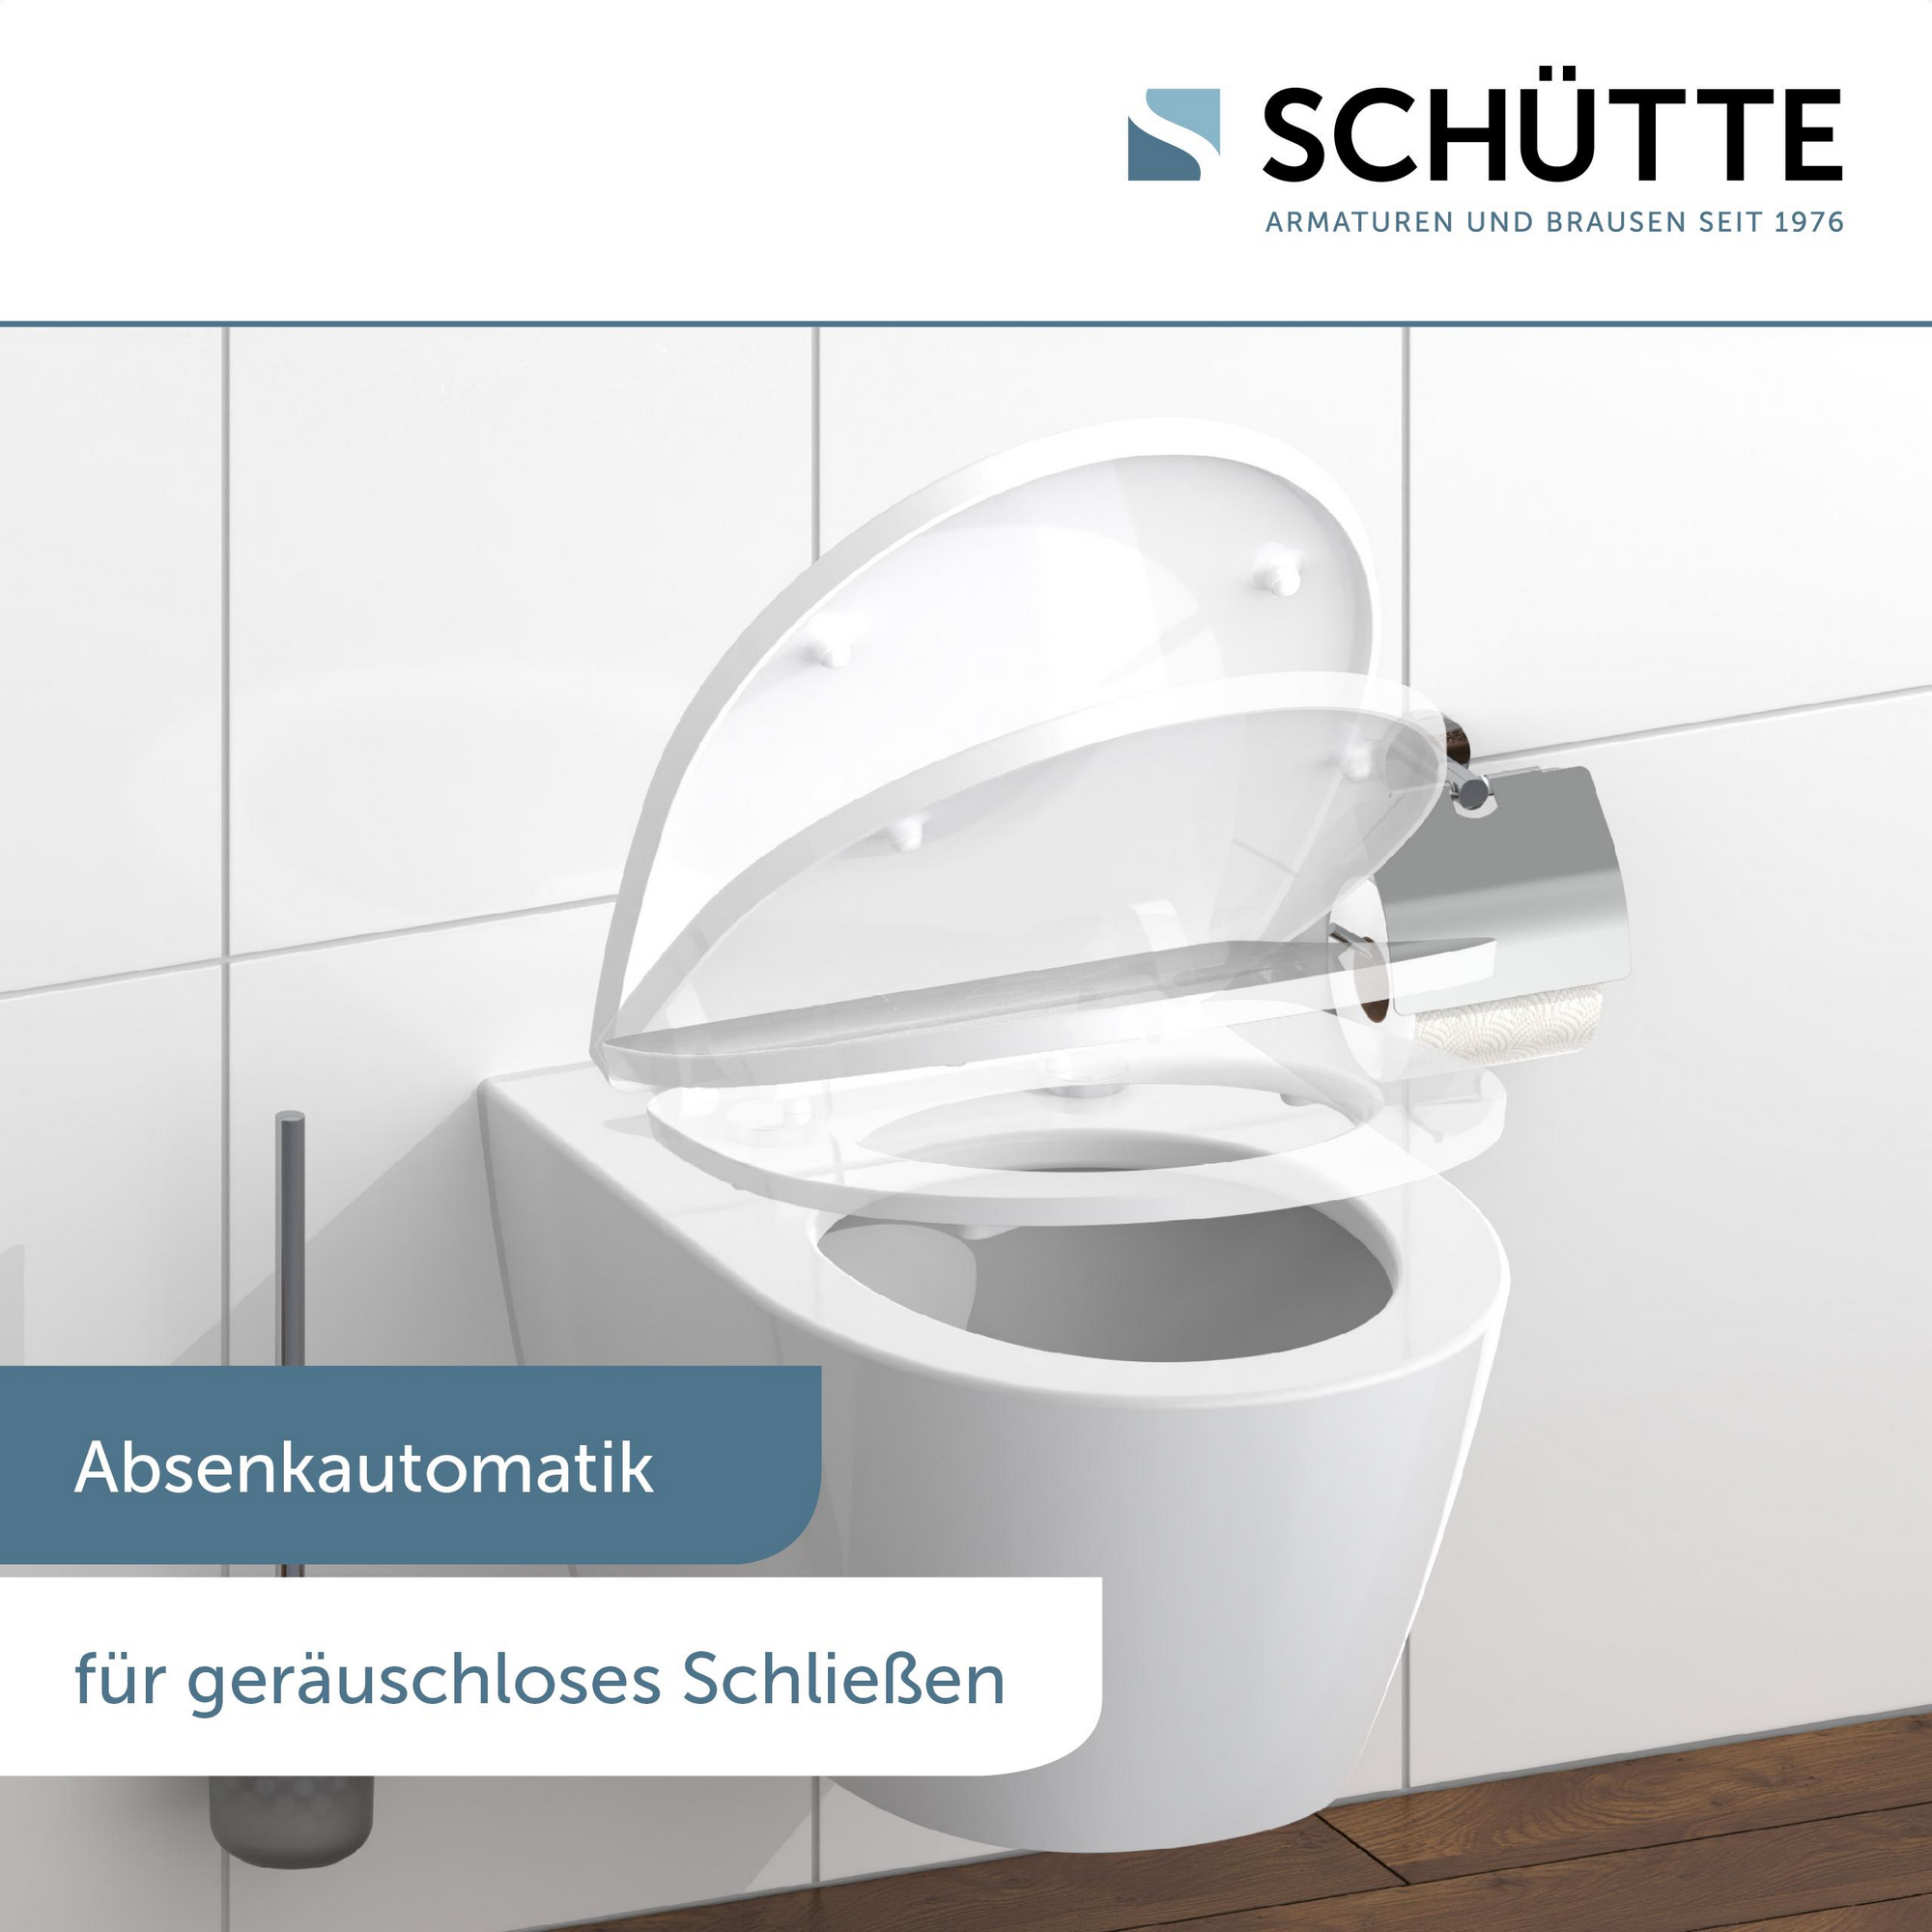 WC-Sitz 'Broken Glass HG' mit Absenkautomatik schwarz/weiß 37,5 x 45 cm + product picture